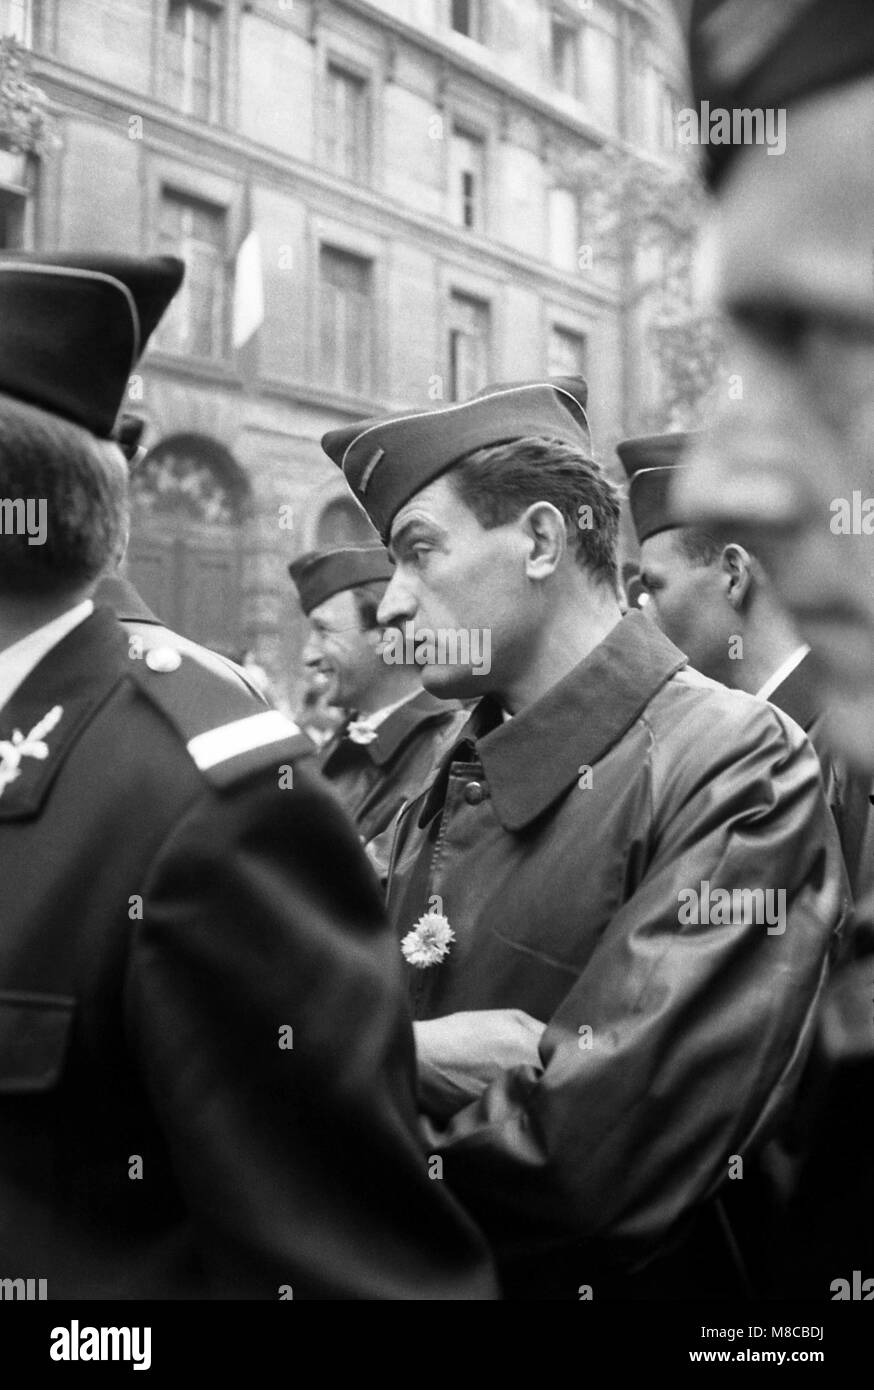 Philippe Gras / Le Pictorium -  May 1968 -  1968  -  France / Ile-de-France (region) / Paris  -  Policemen waiting Stock Photo